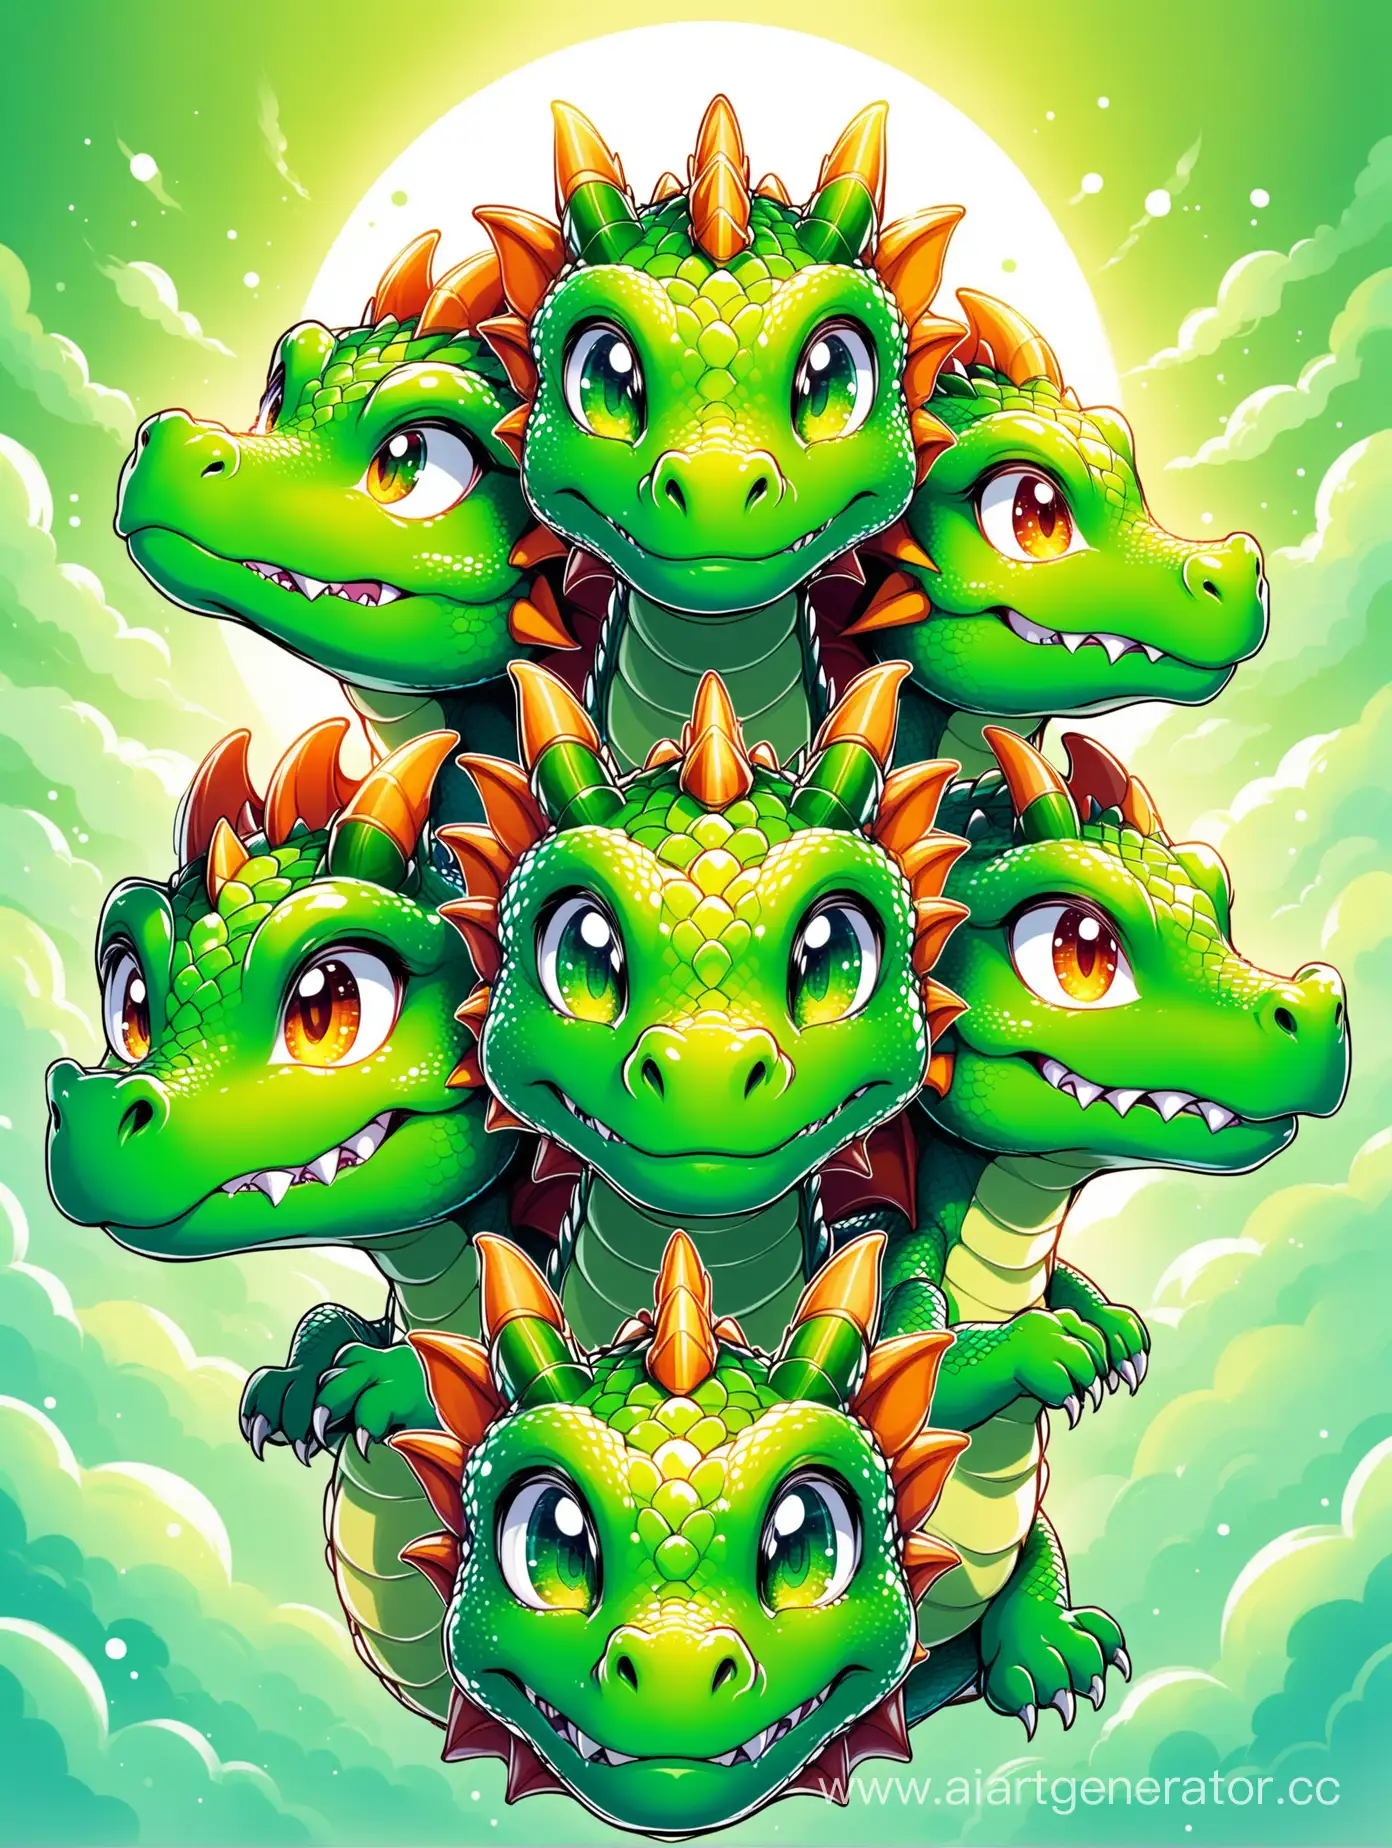 Дракон у которого 5 голов смотрят в разные стороны. Дракон зелёный, а головы разноцветные. Картинка милая, добрая, улыбается.